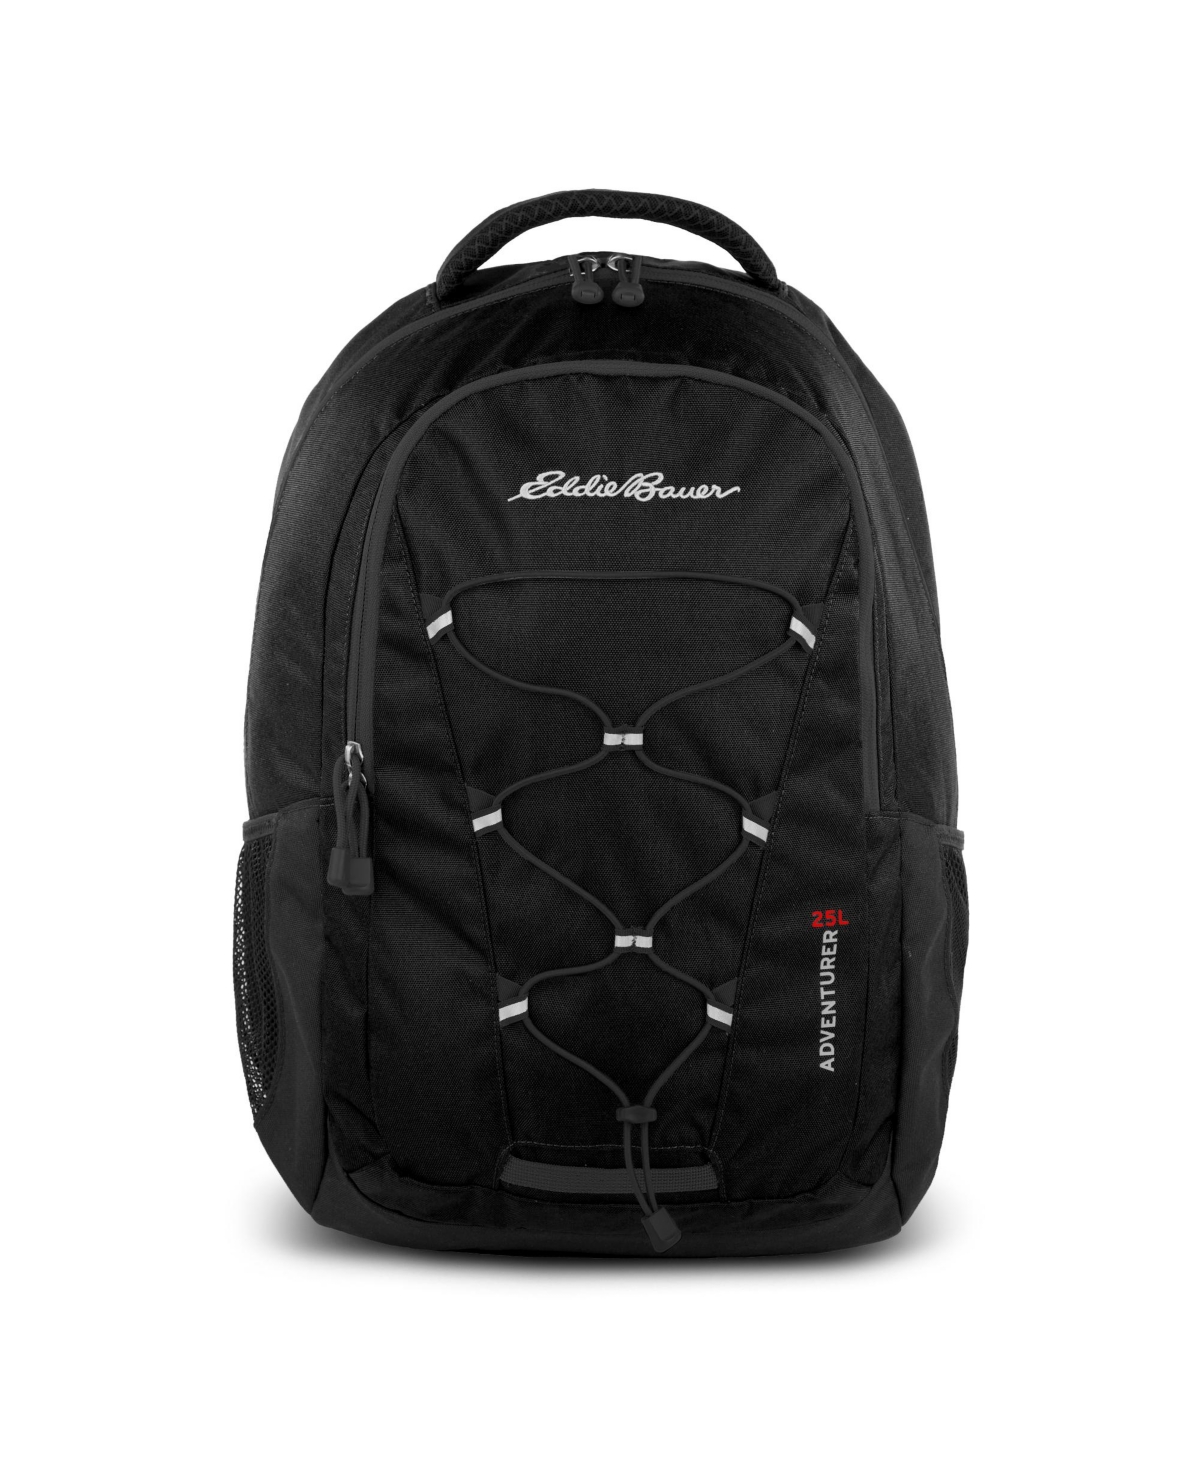 Eddie Bauer Adventurer 25 Liters Backpack In Black